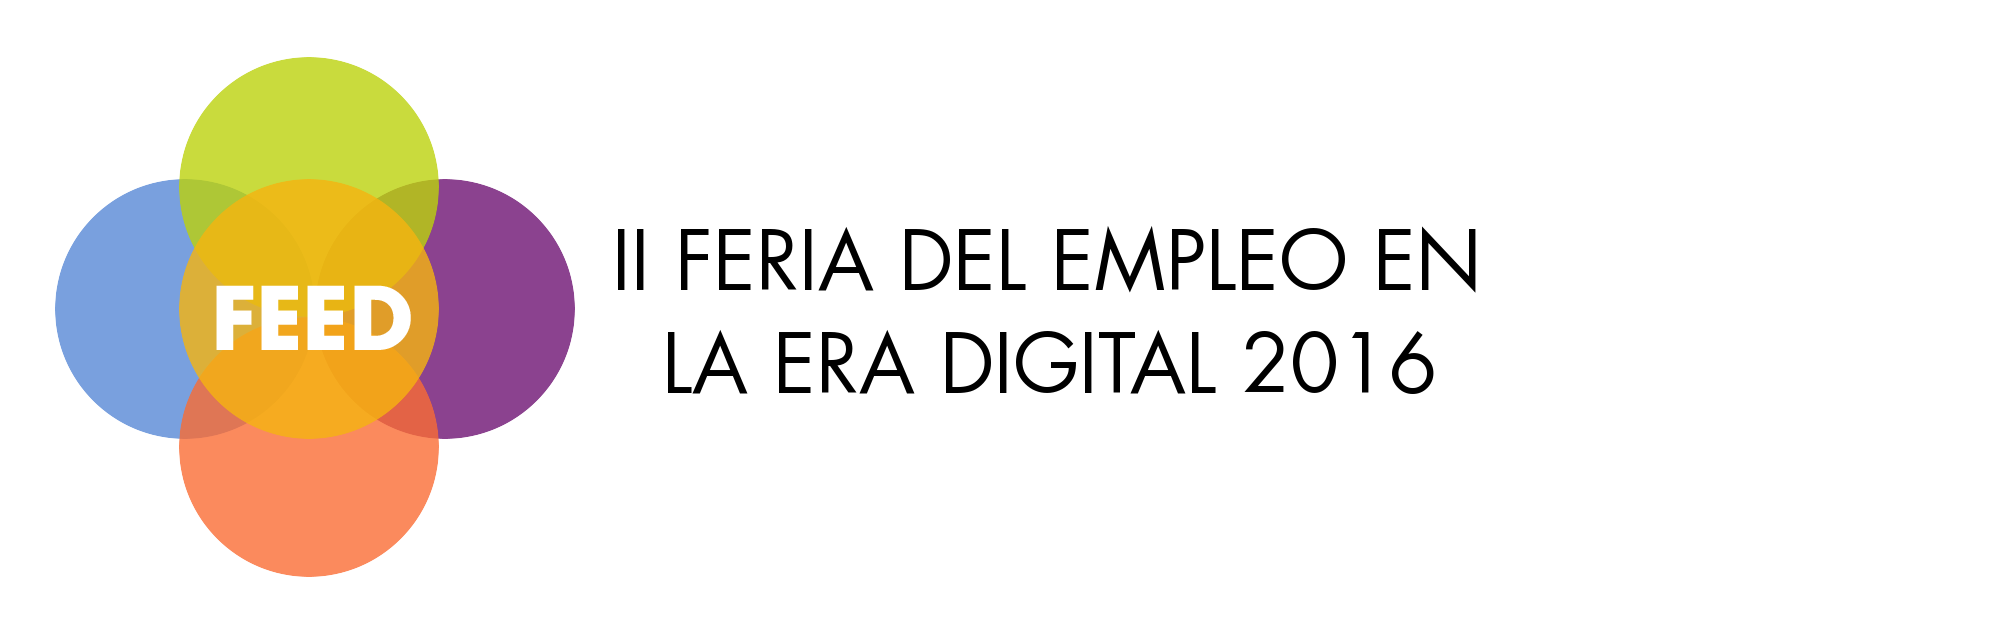 logo-feria-formato-2016